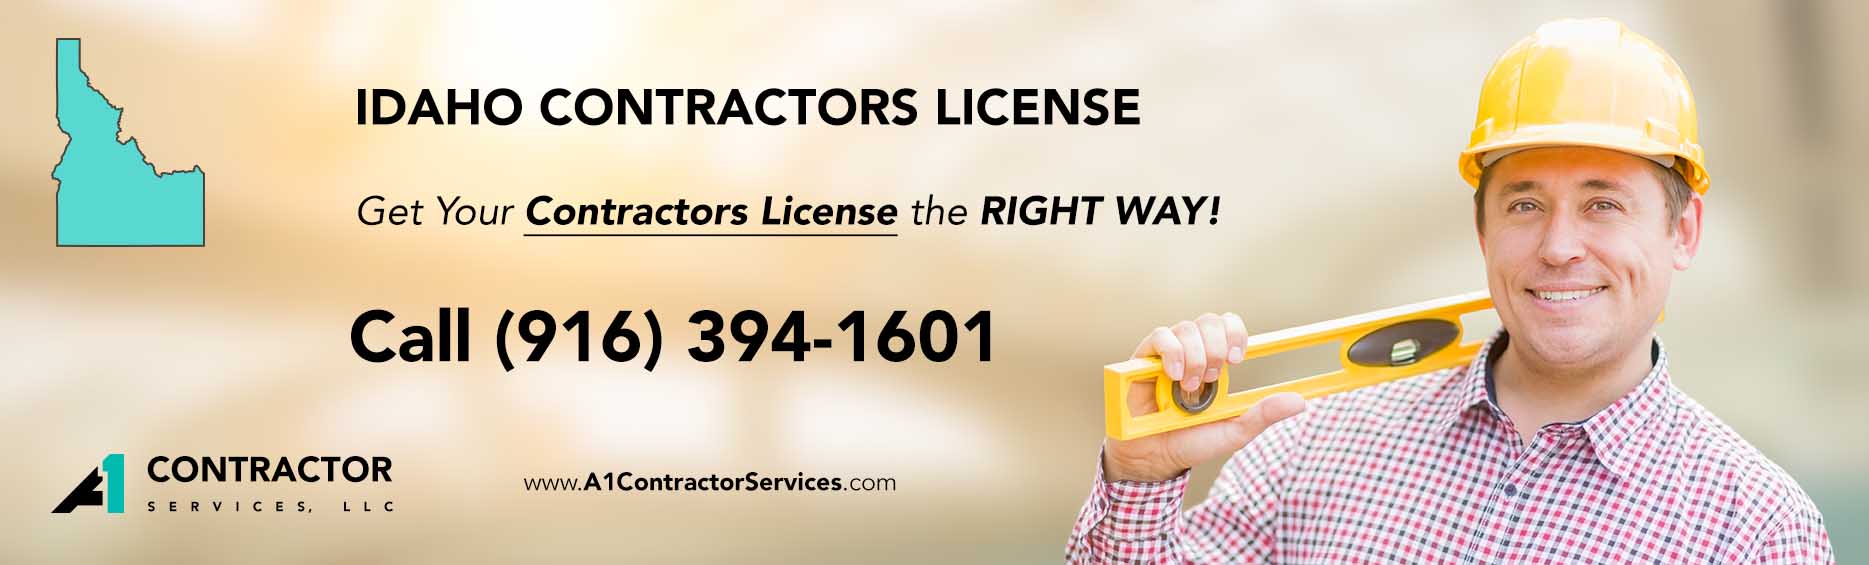 Idaho Contractors License